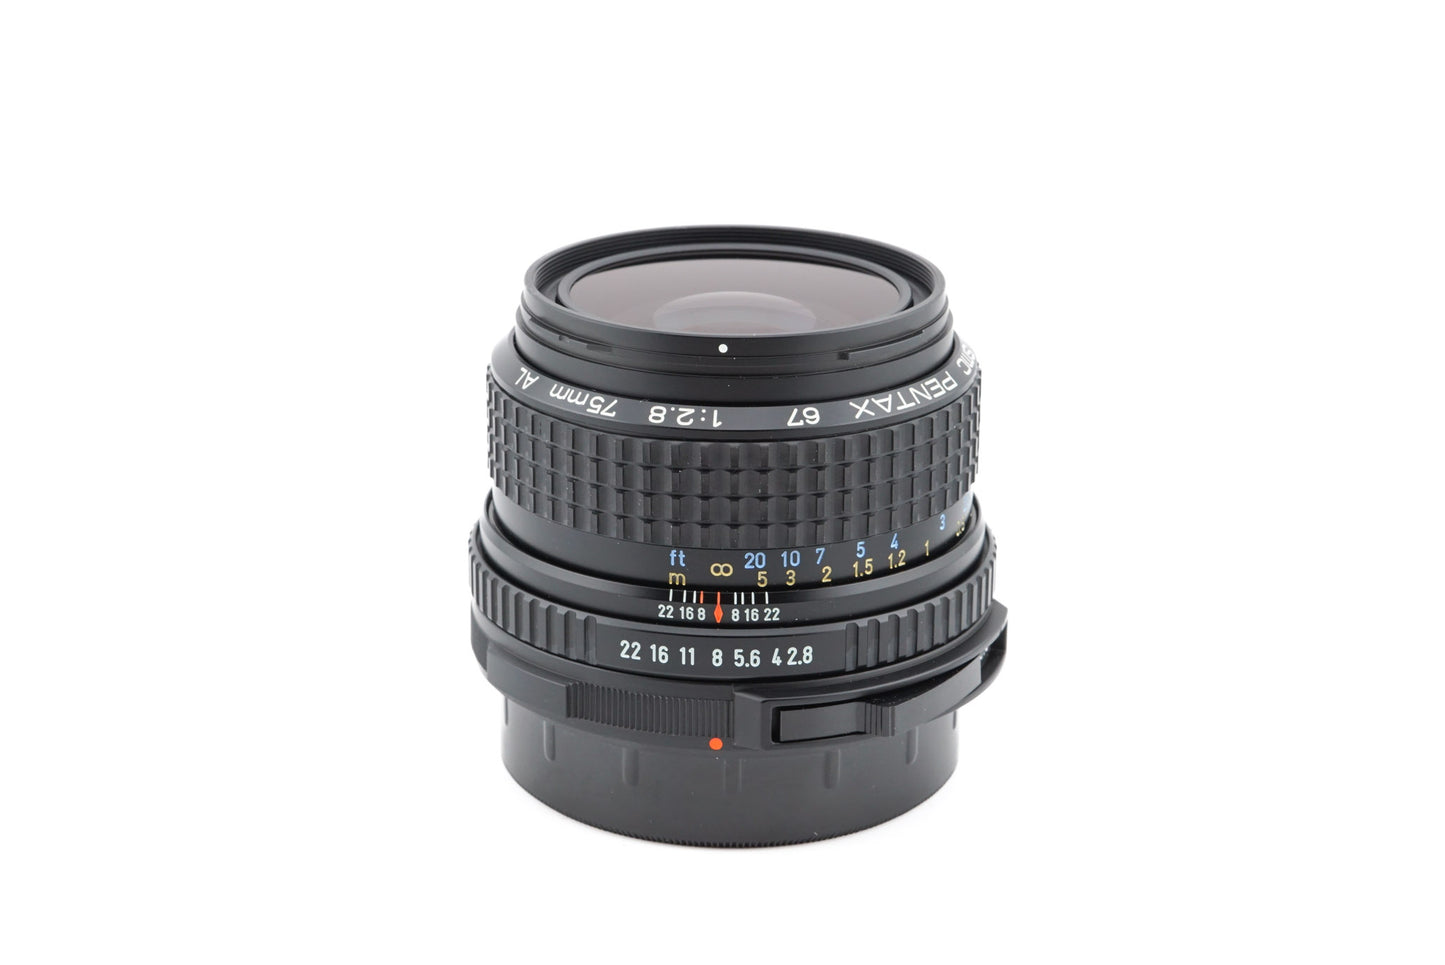 Pentax 75mm f2.8 AL SMC - Lens